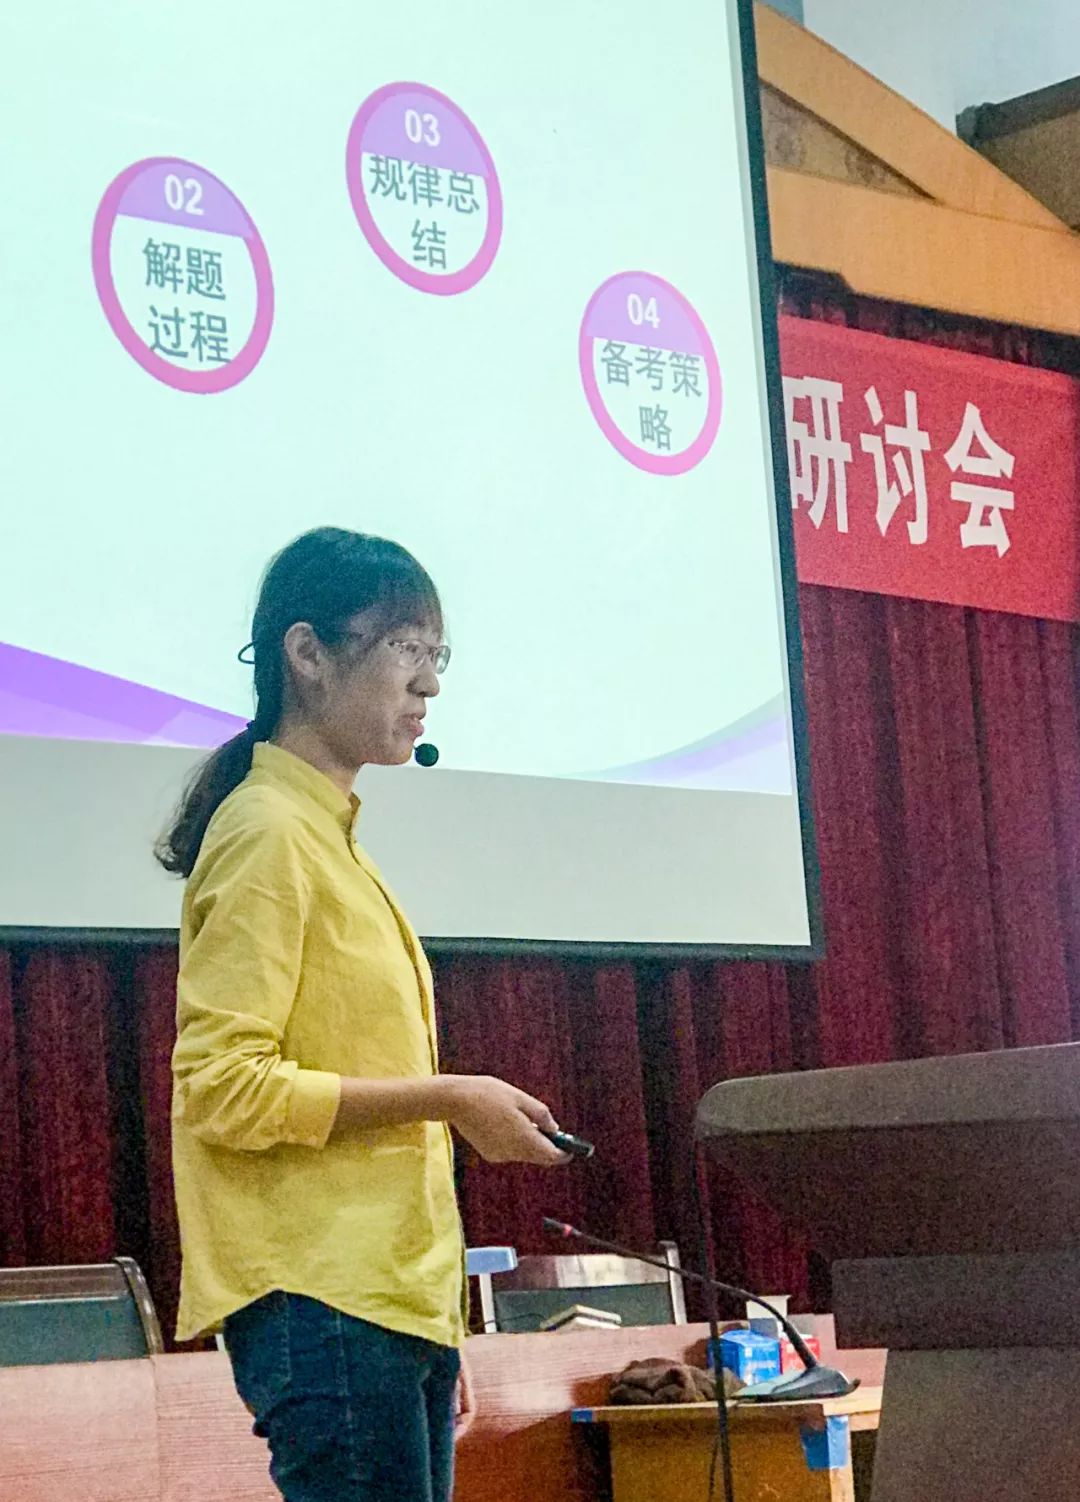 无棣二中成功举办滨州市高三语文说题比赛 暨高三语文教学研讨会